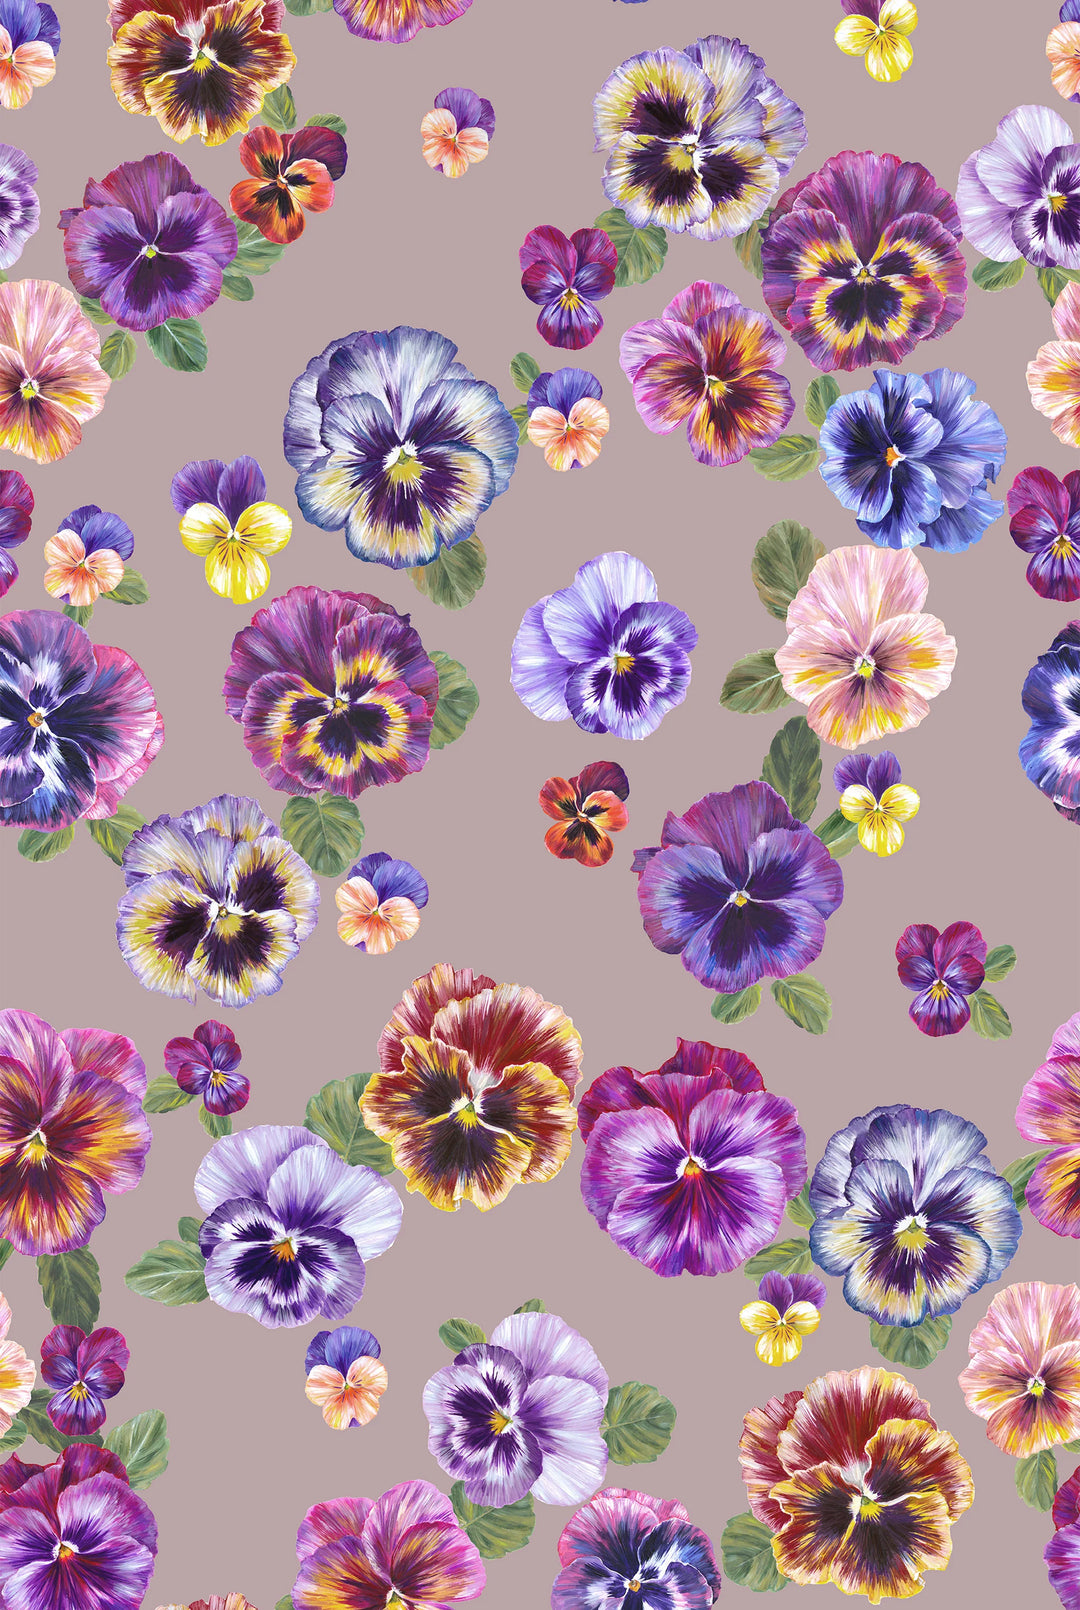 Victoria-Sanders-Plethora-of-pansies-hand-painted-details-pansies-in-bruised-pink-back-background-wallpaper-floral-pattern